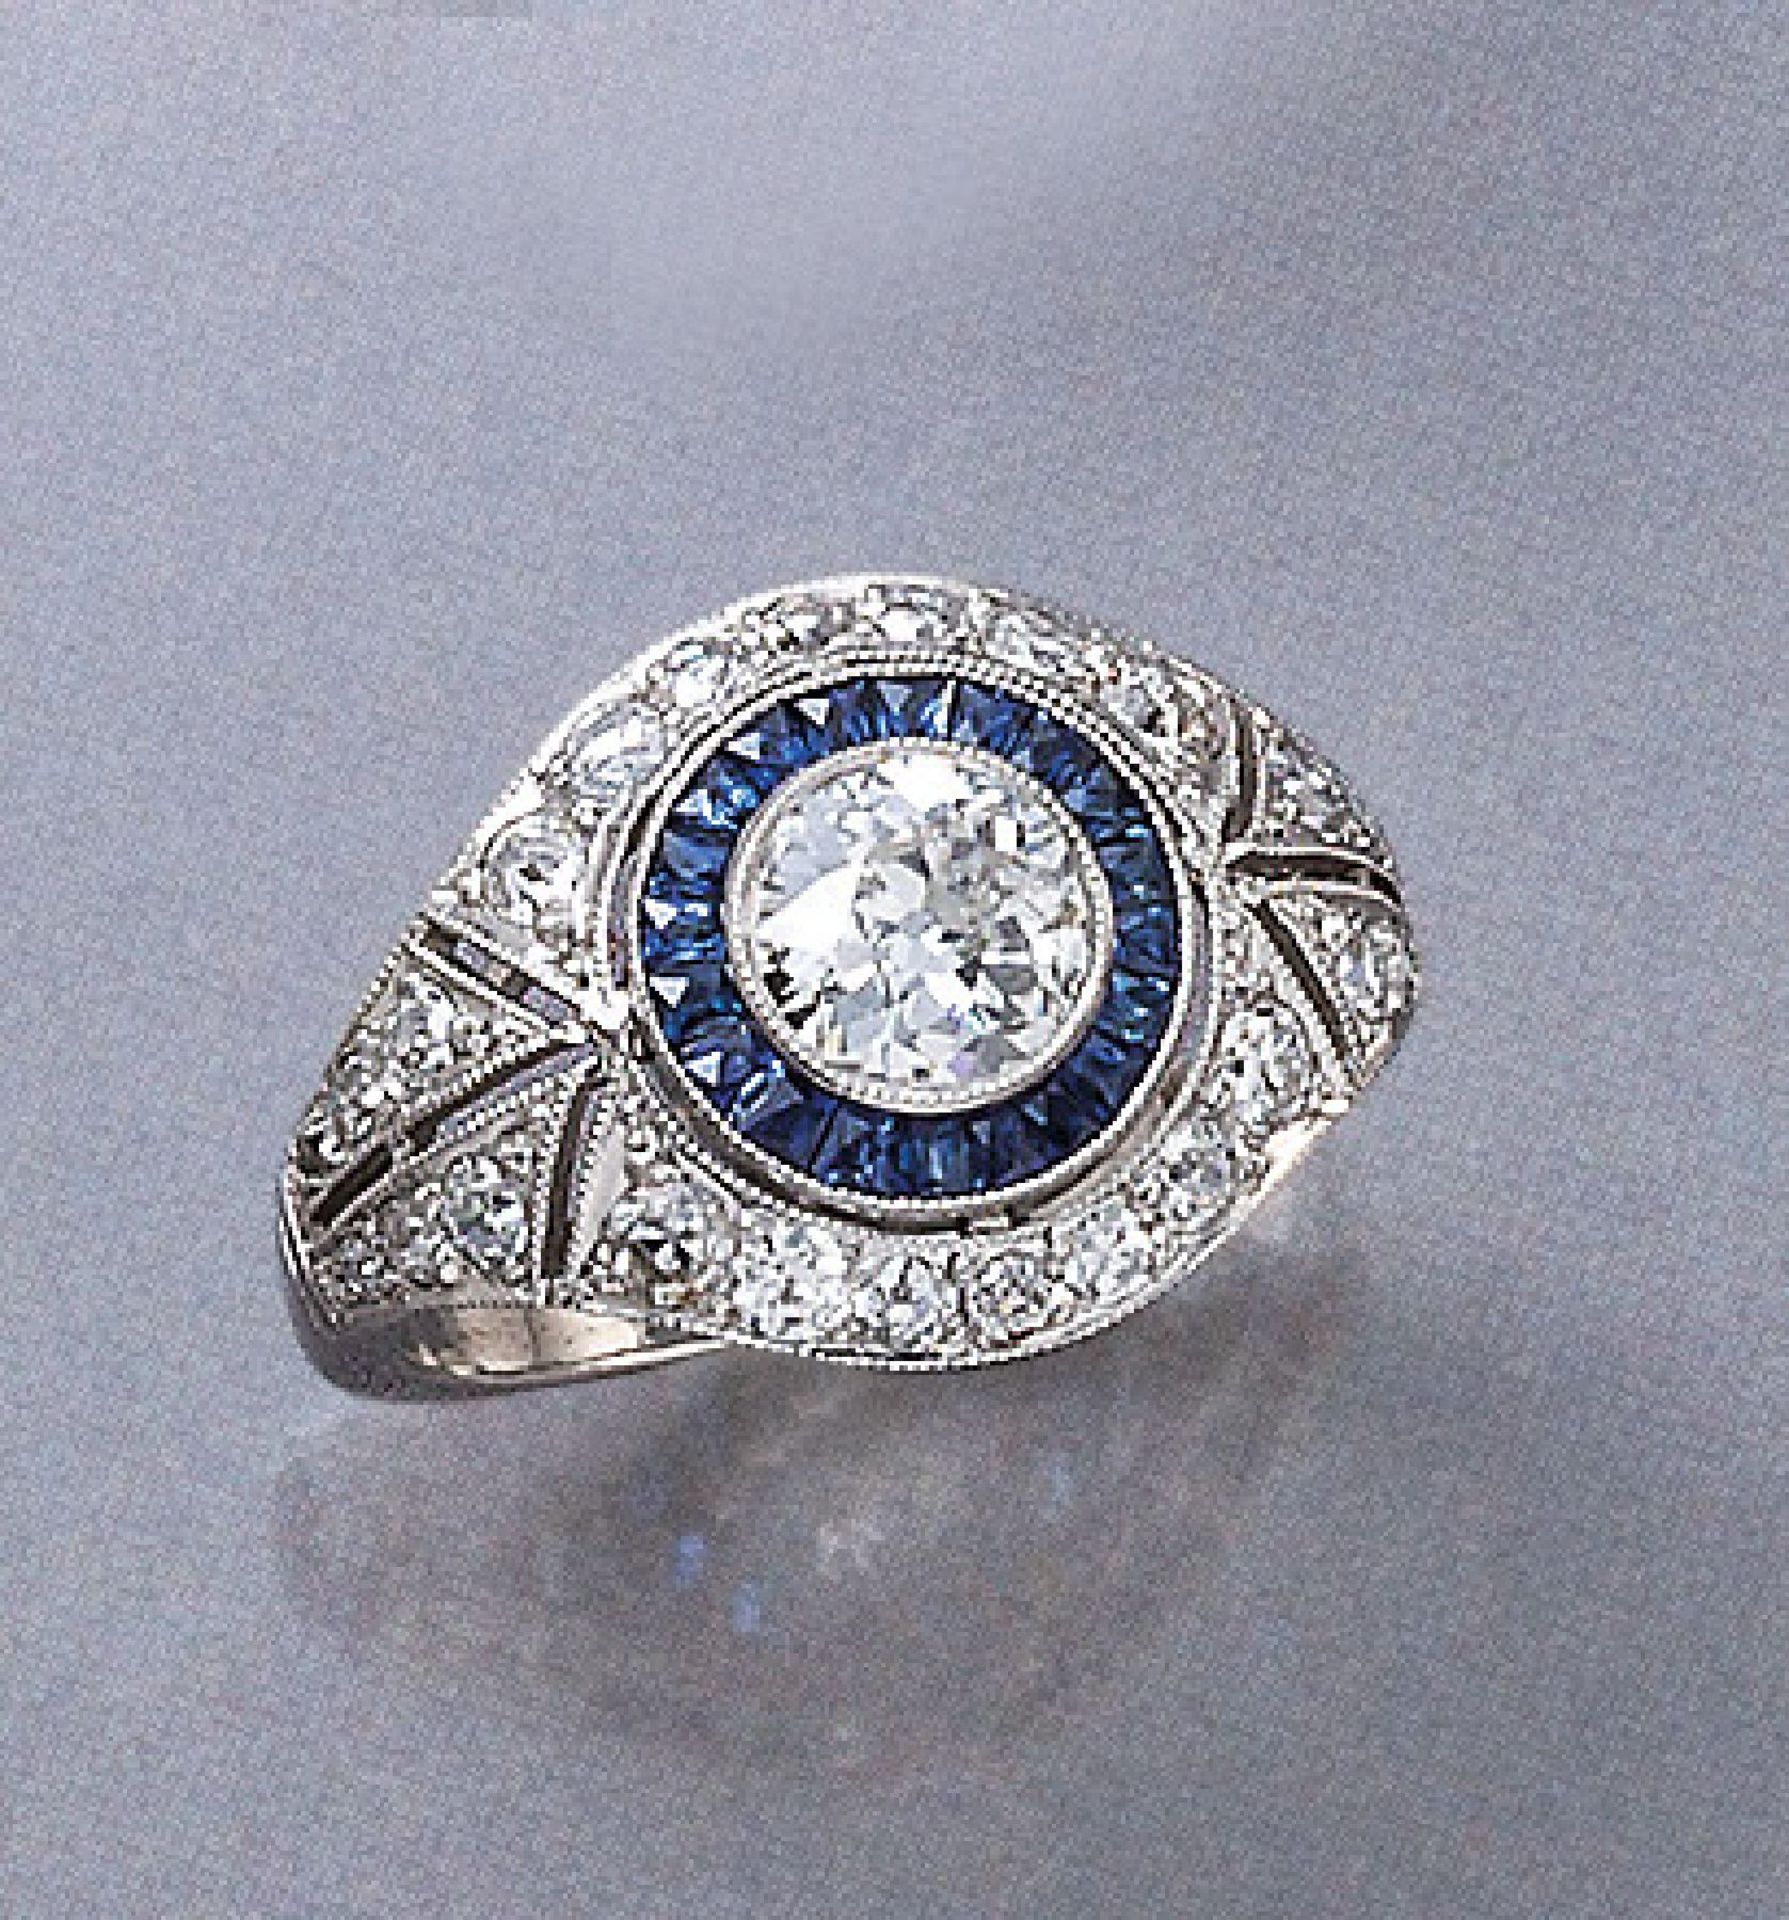 Platin Ring mit Saphiren und Diamanten, im Art-Deco Stil, durchbrochen gearbeitet, mit